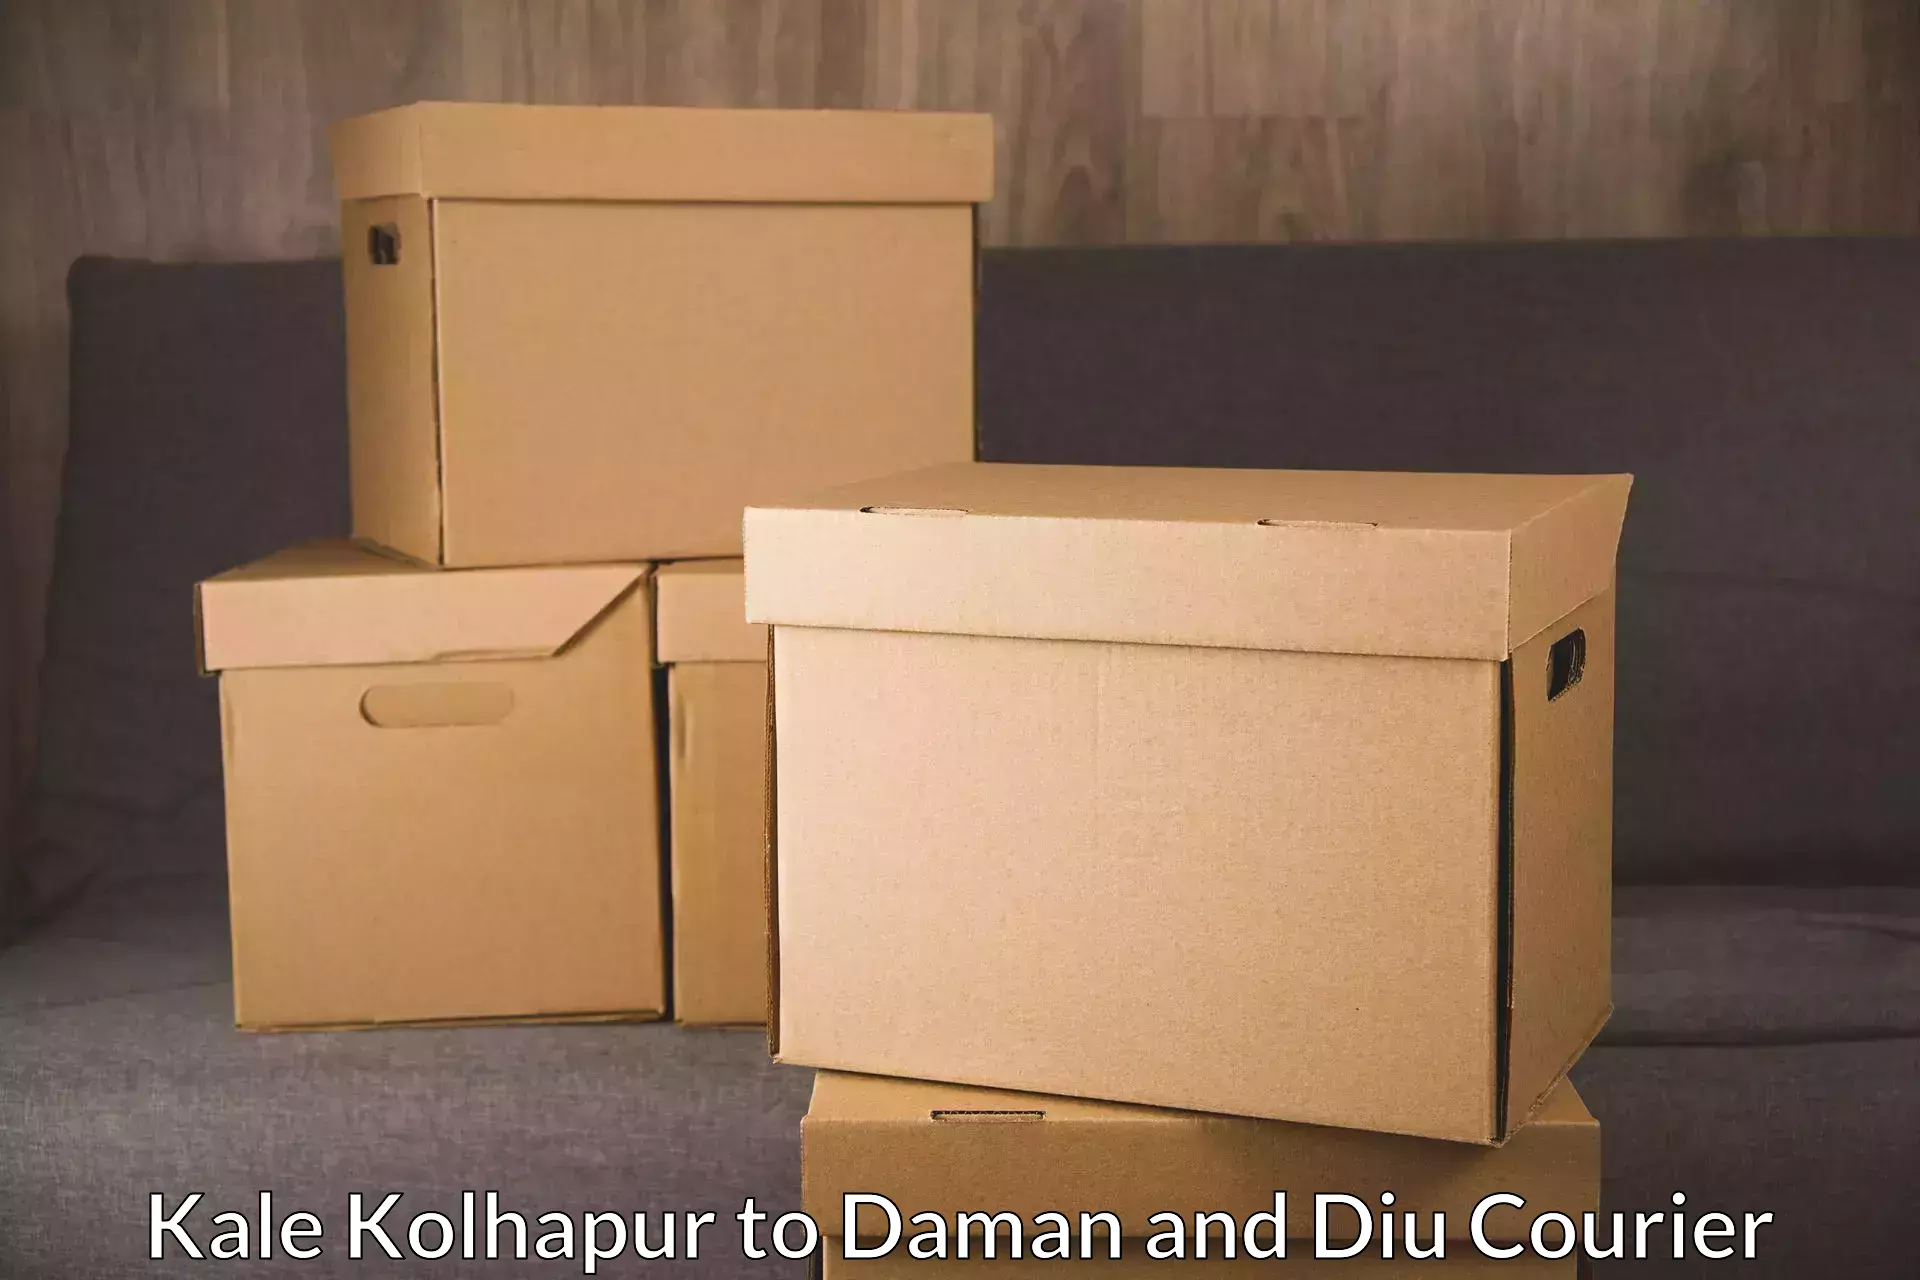 High-efficiency logistics Kale Kolhapur to Daman and Diu